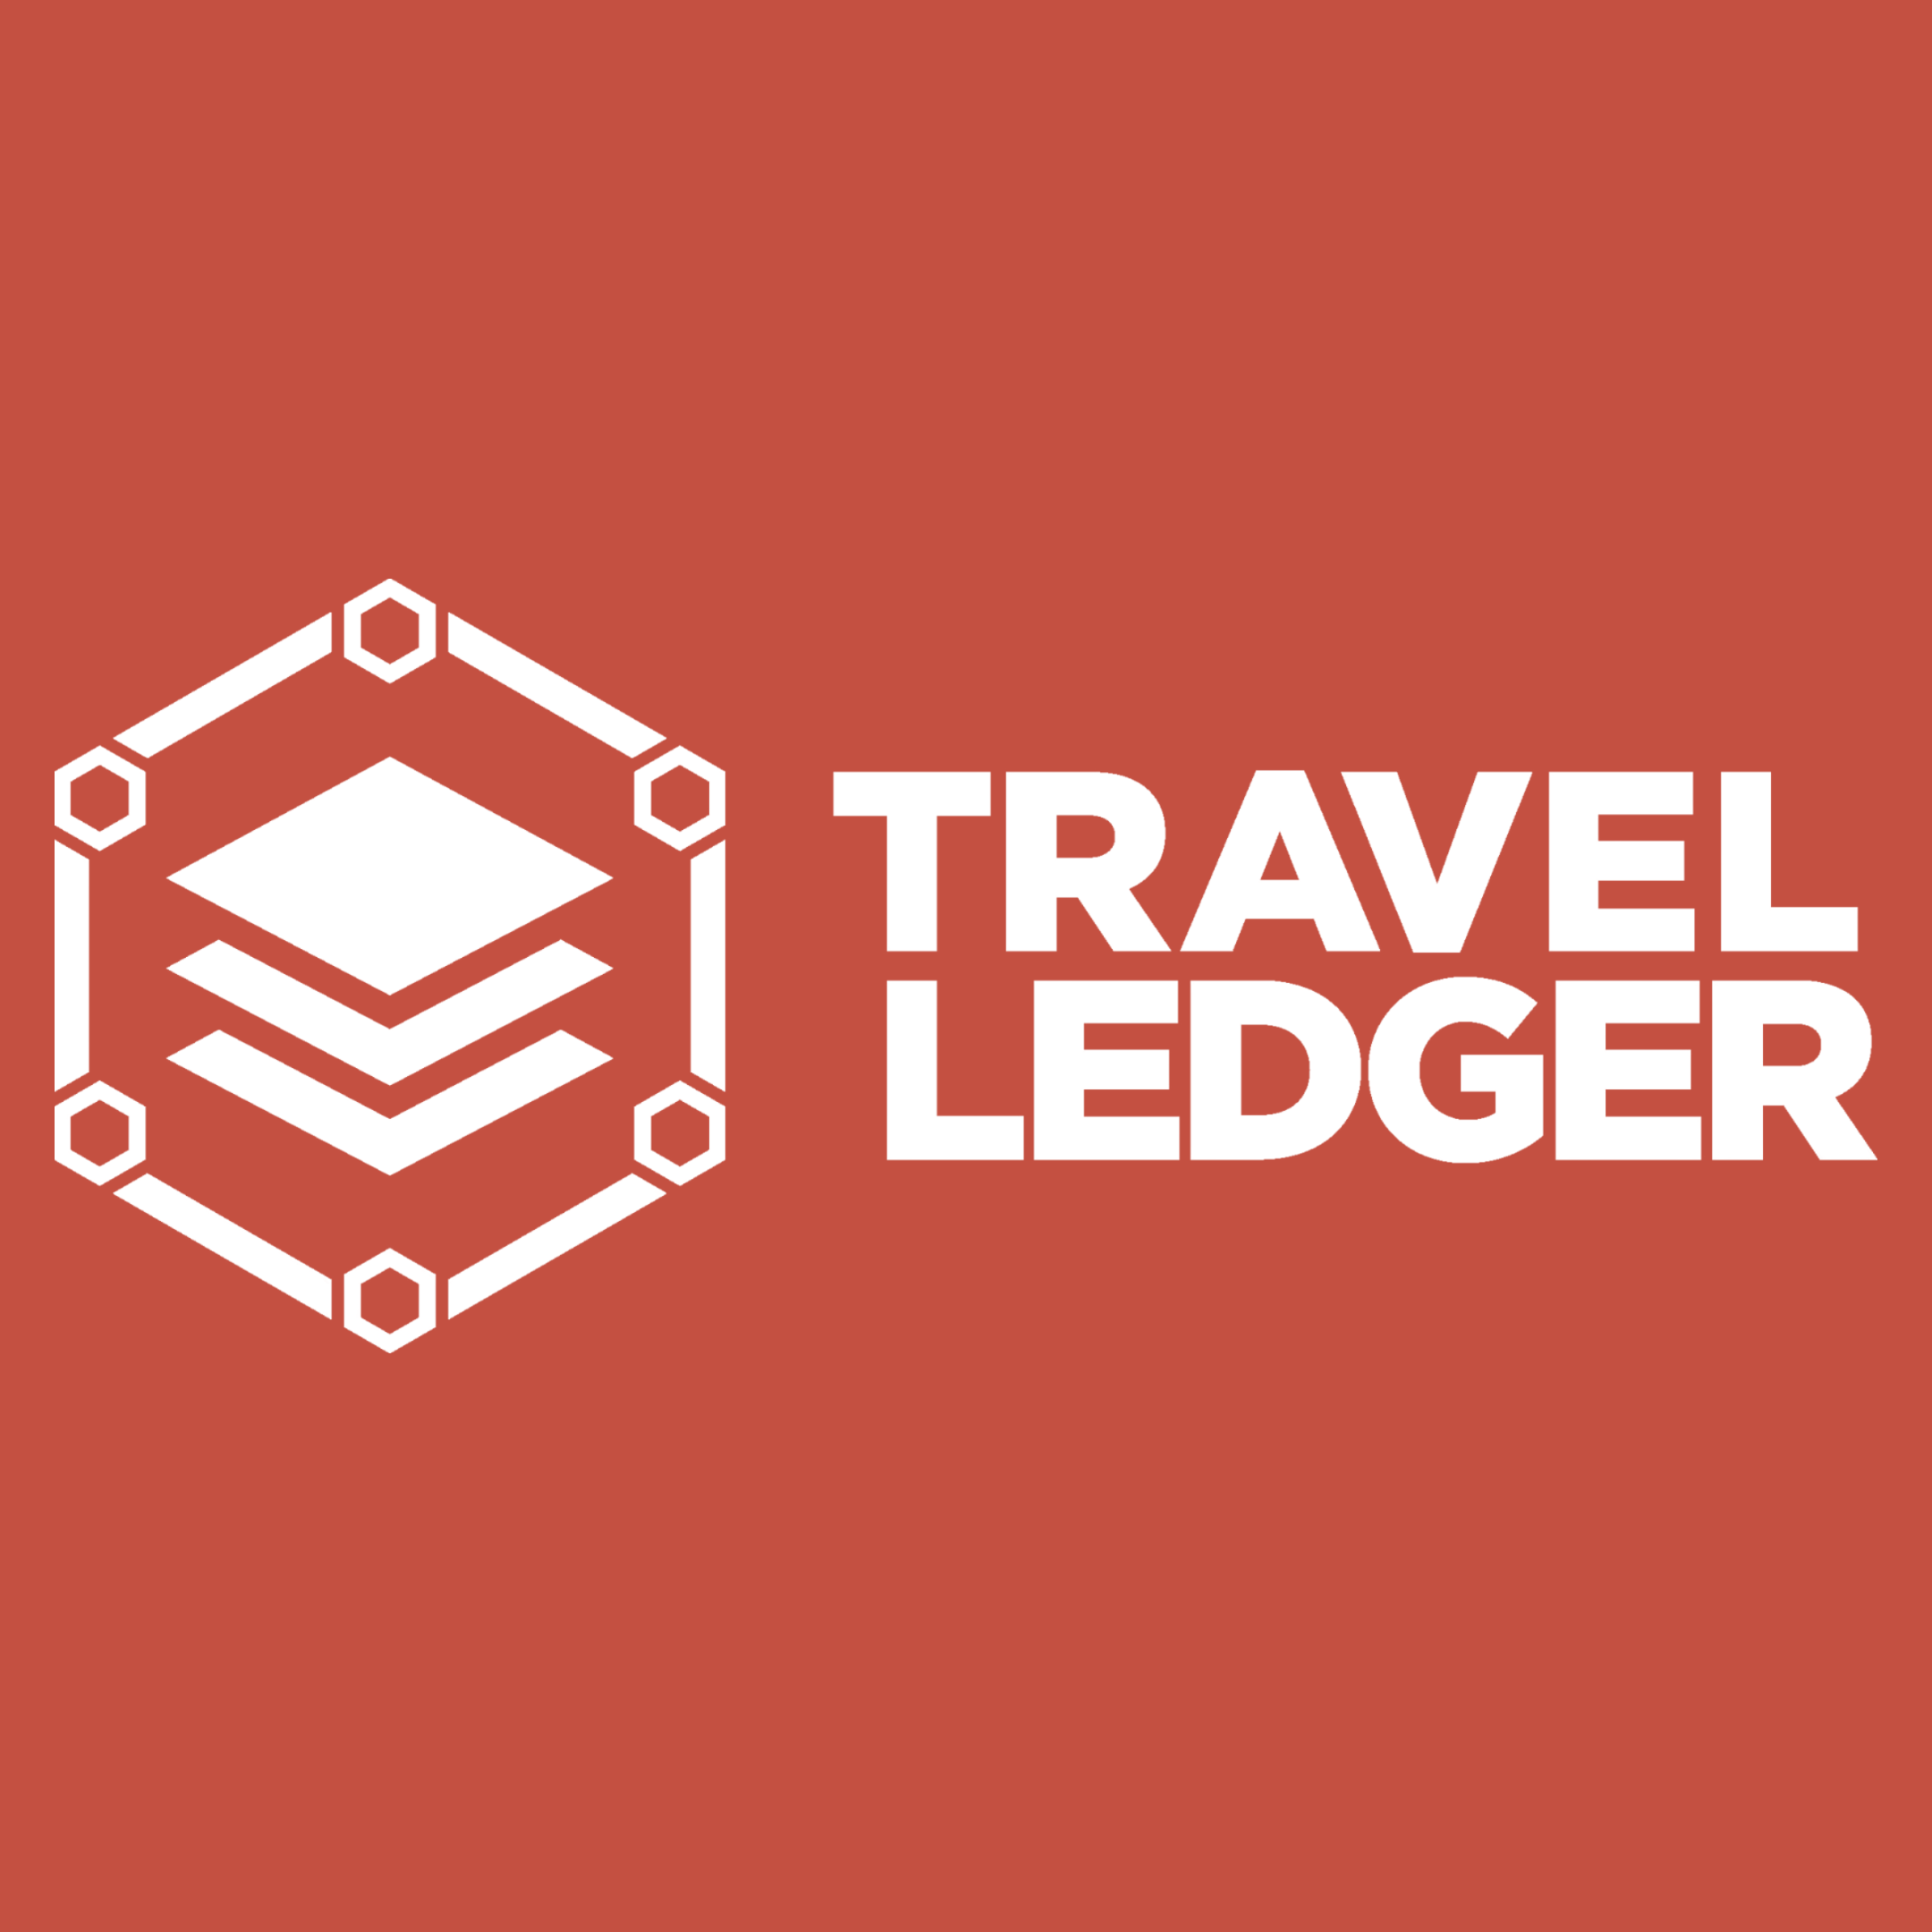 travel ledger